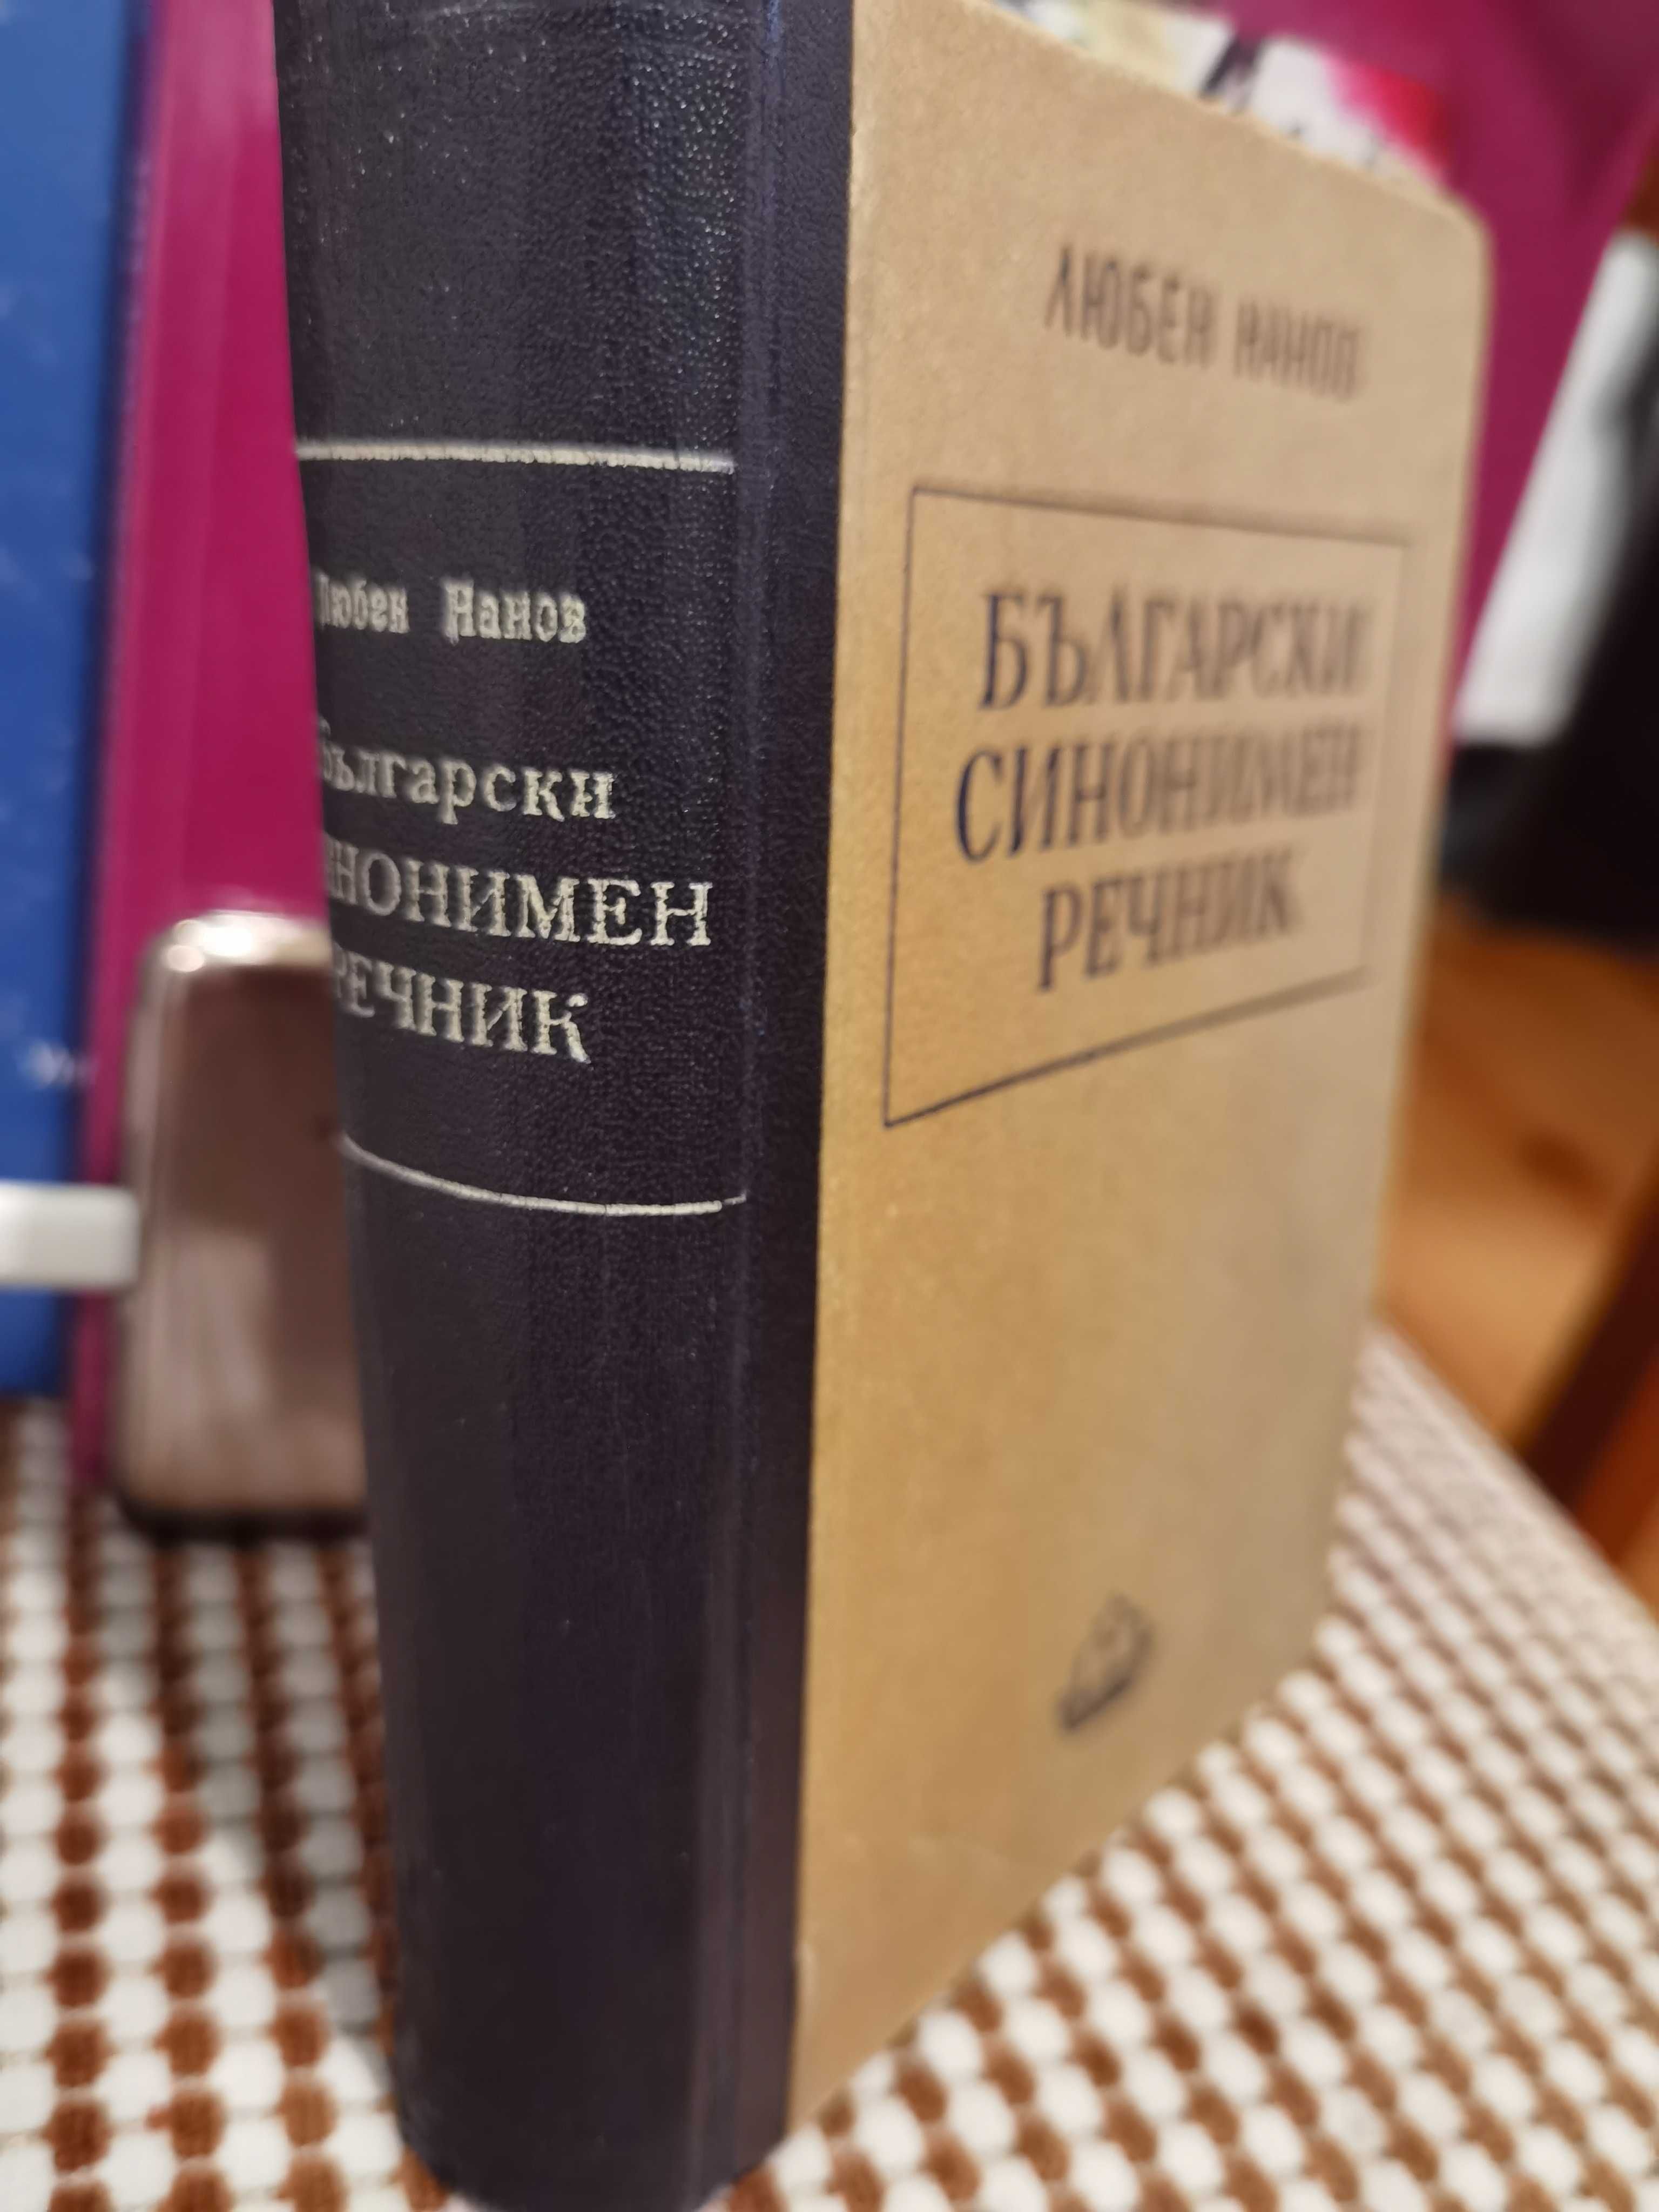 Антикварна Книга Български синонимен речник от Любен Нанов 1950 г.